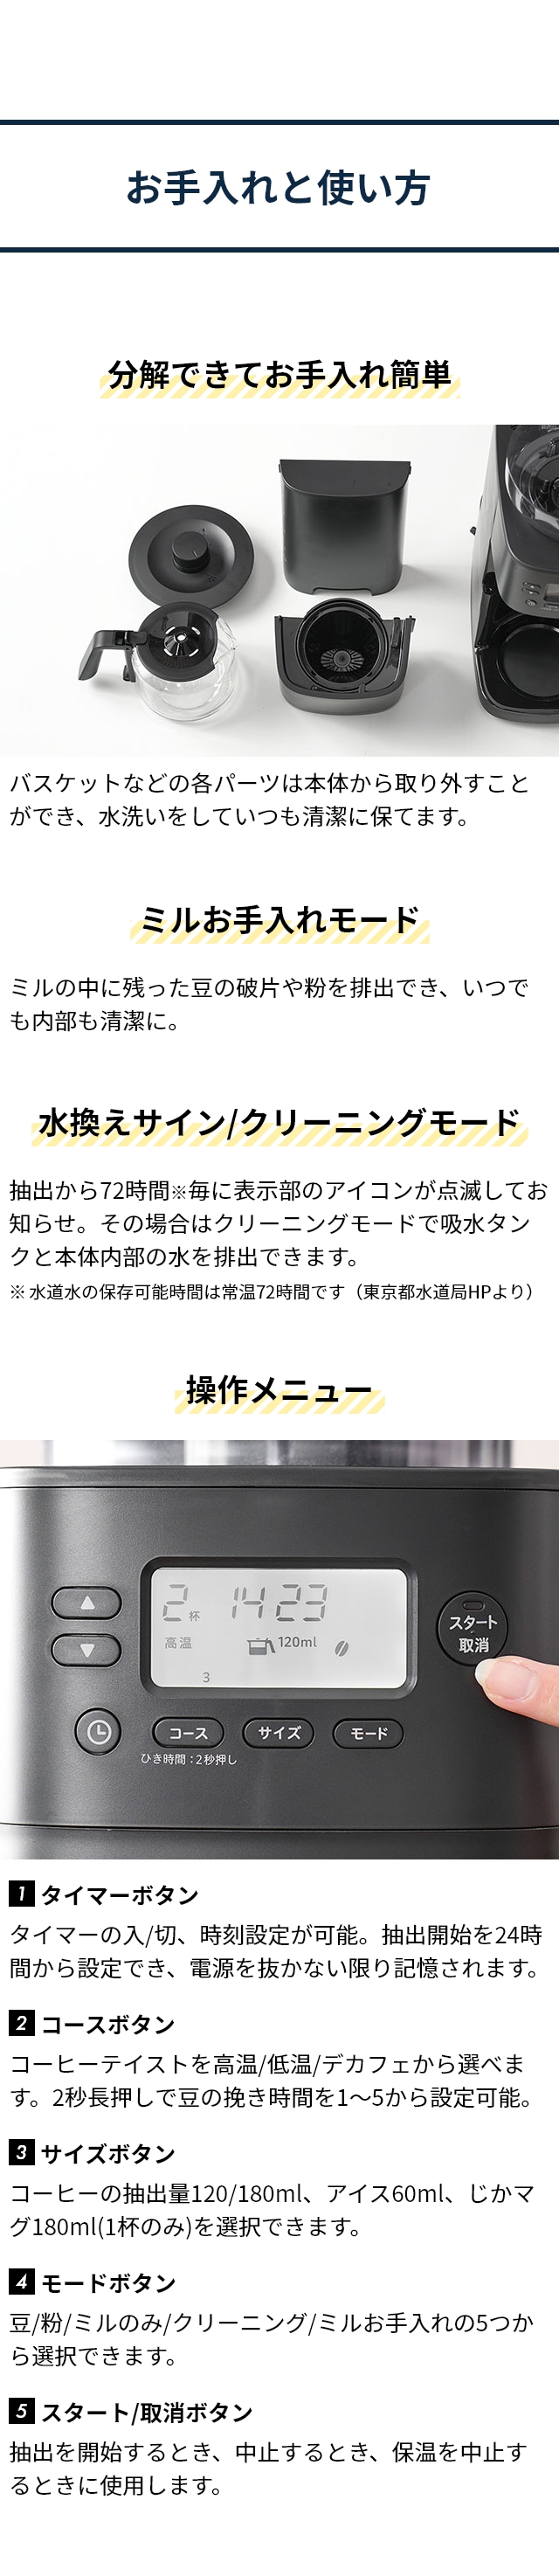 シロカ 【4つから選べる2大特典】 全自動コーヒーメーカー コーン式全